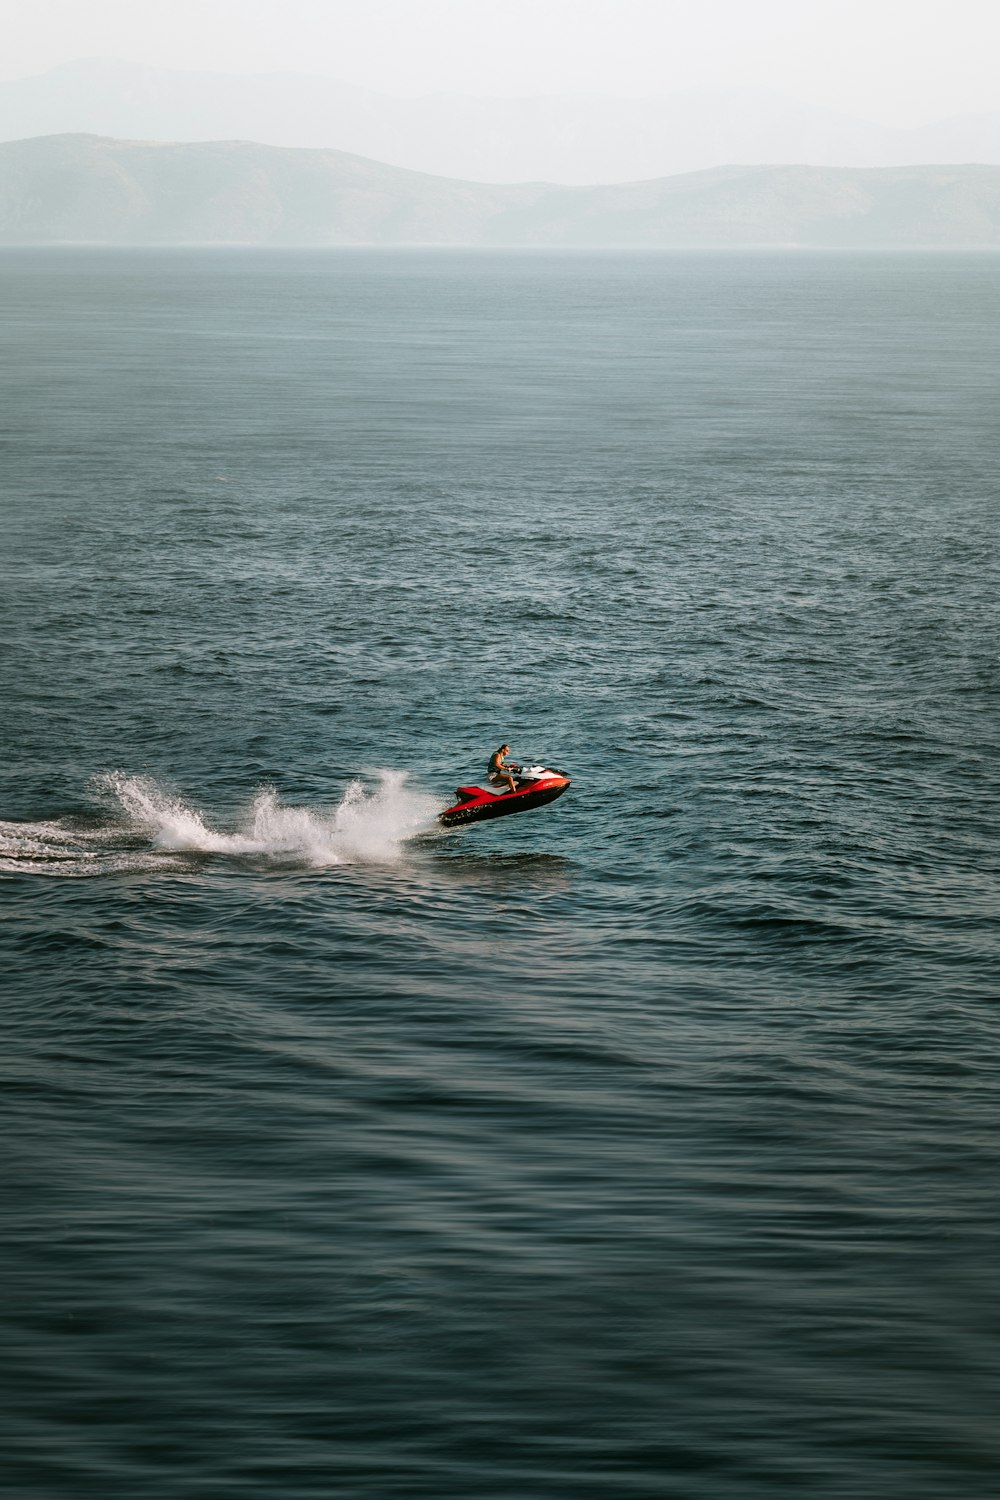 Una persona su una moto d'acqua in mezzo all'oceano